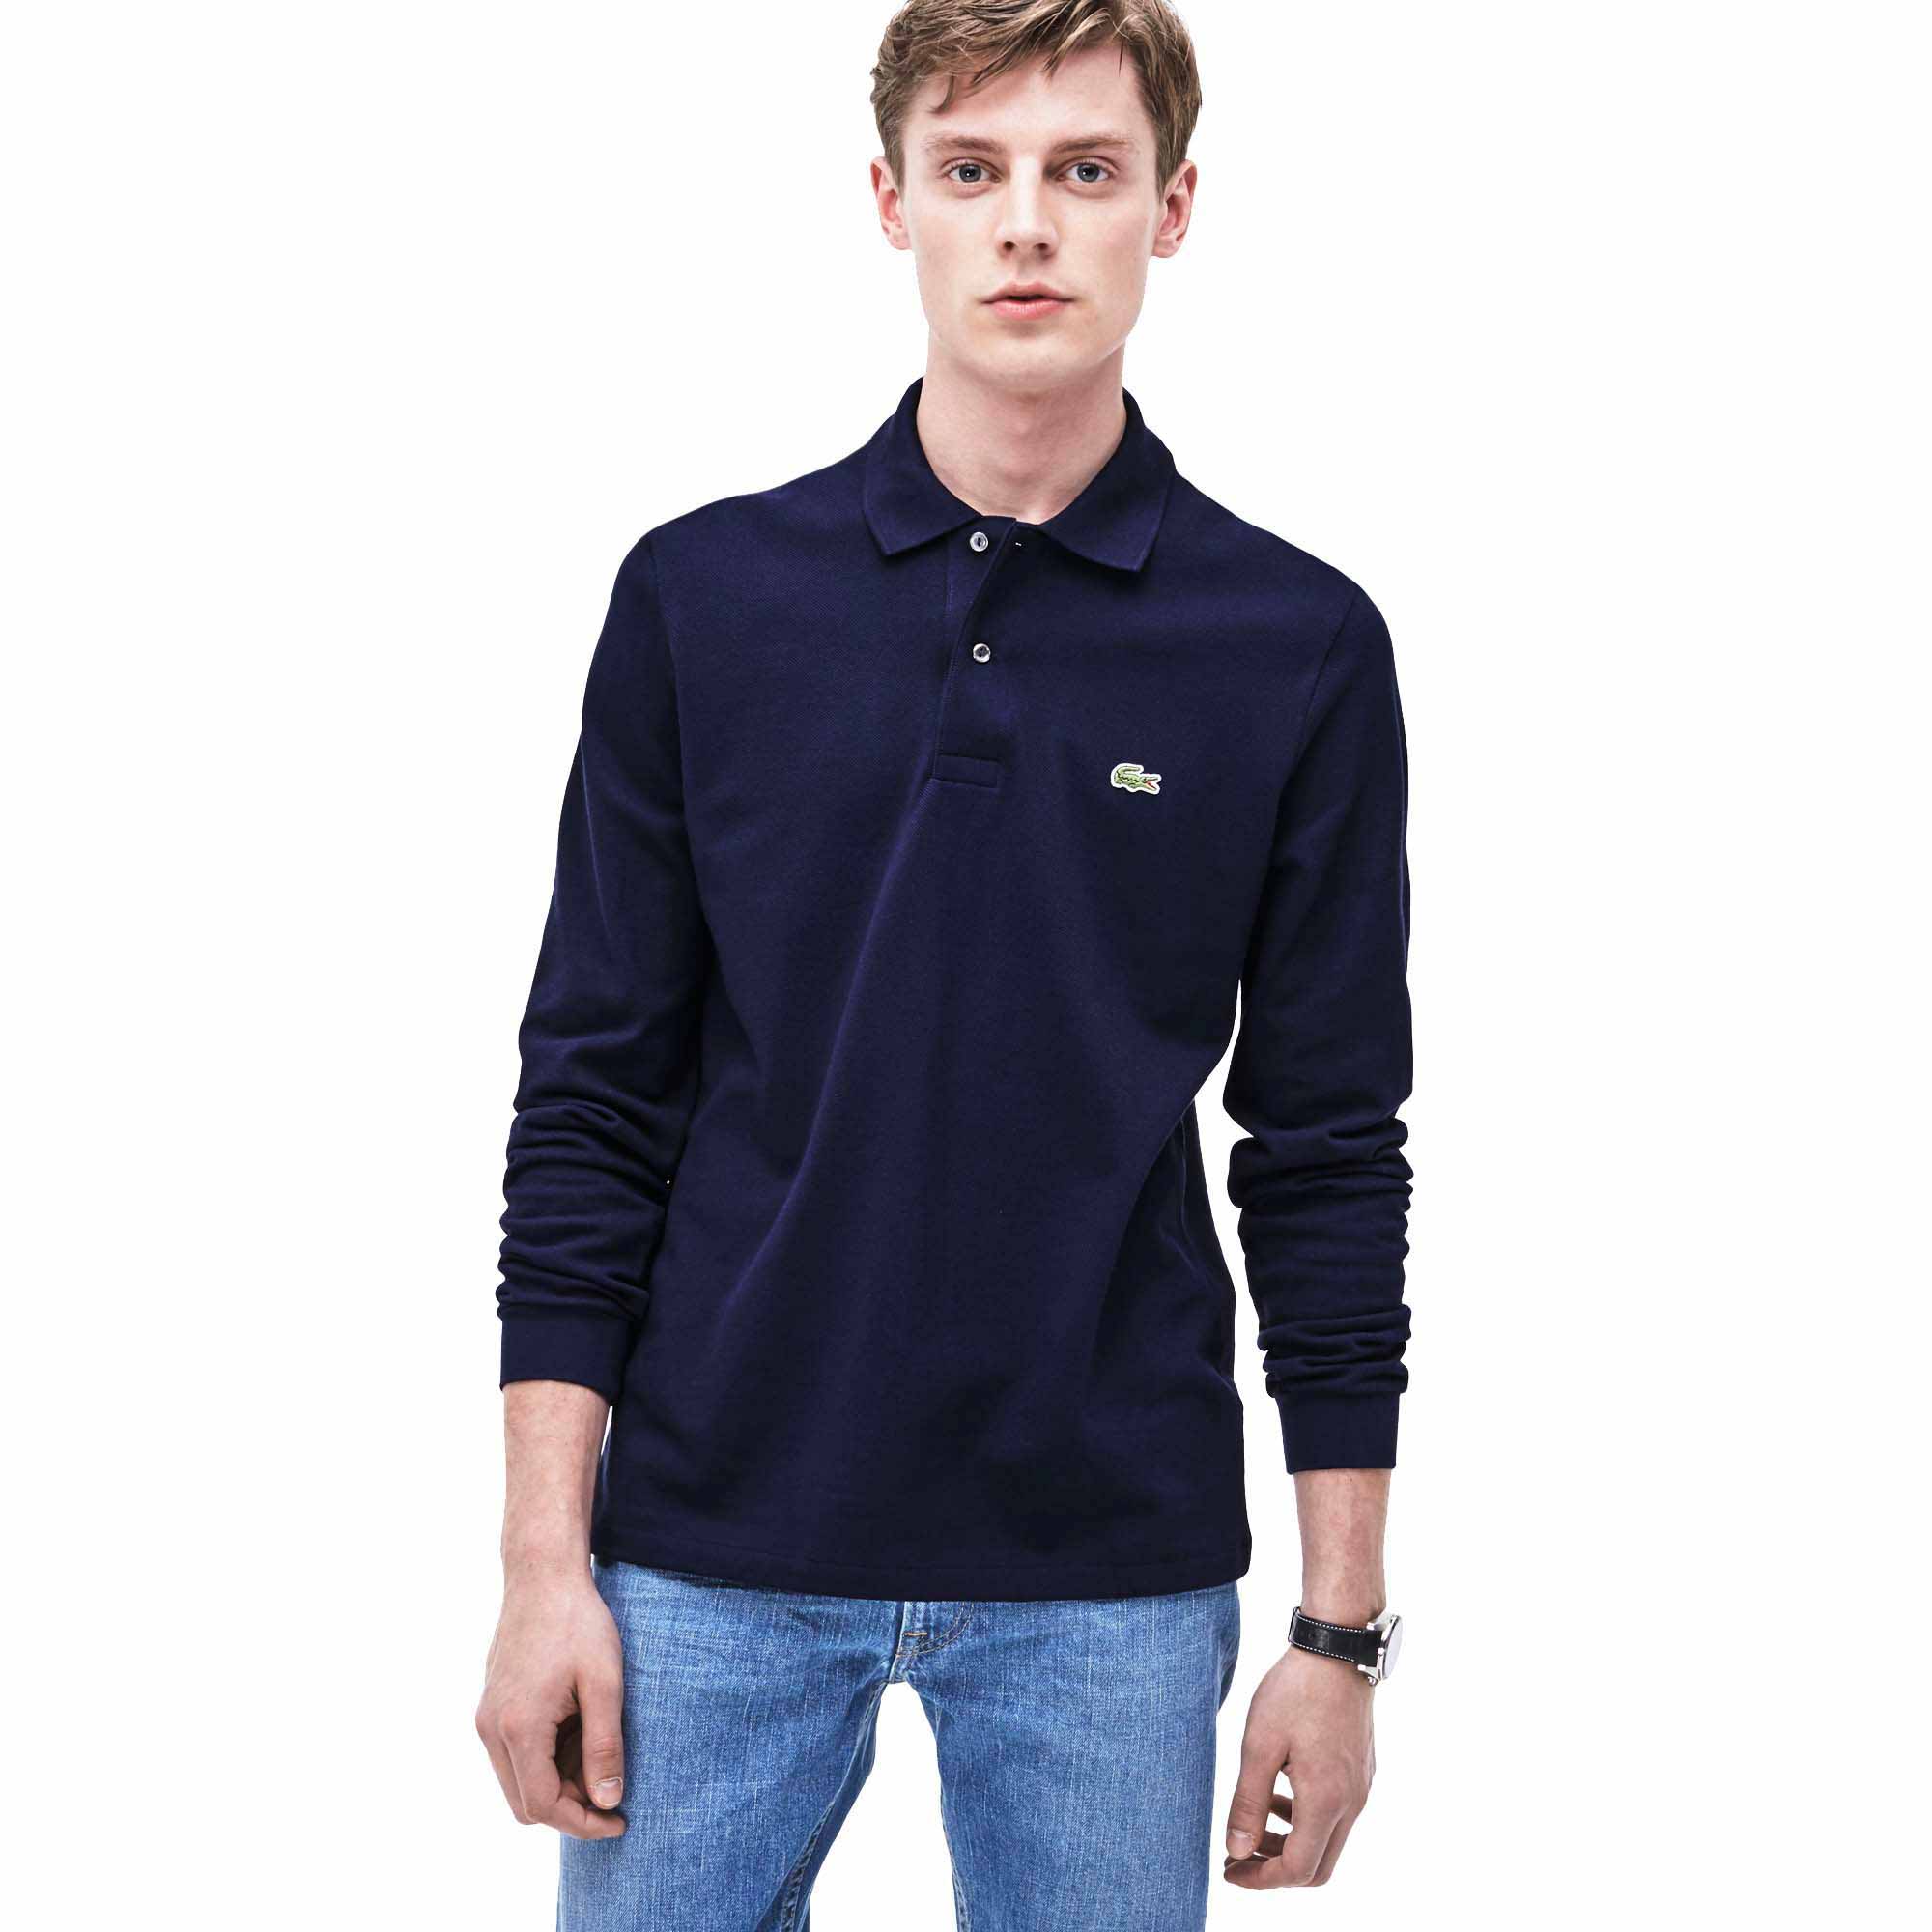 Forudsige deform Godkendelse Lacoste L1312 Best Long Sleeve Polo Shirt Blue | Smashinn